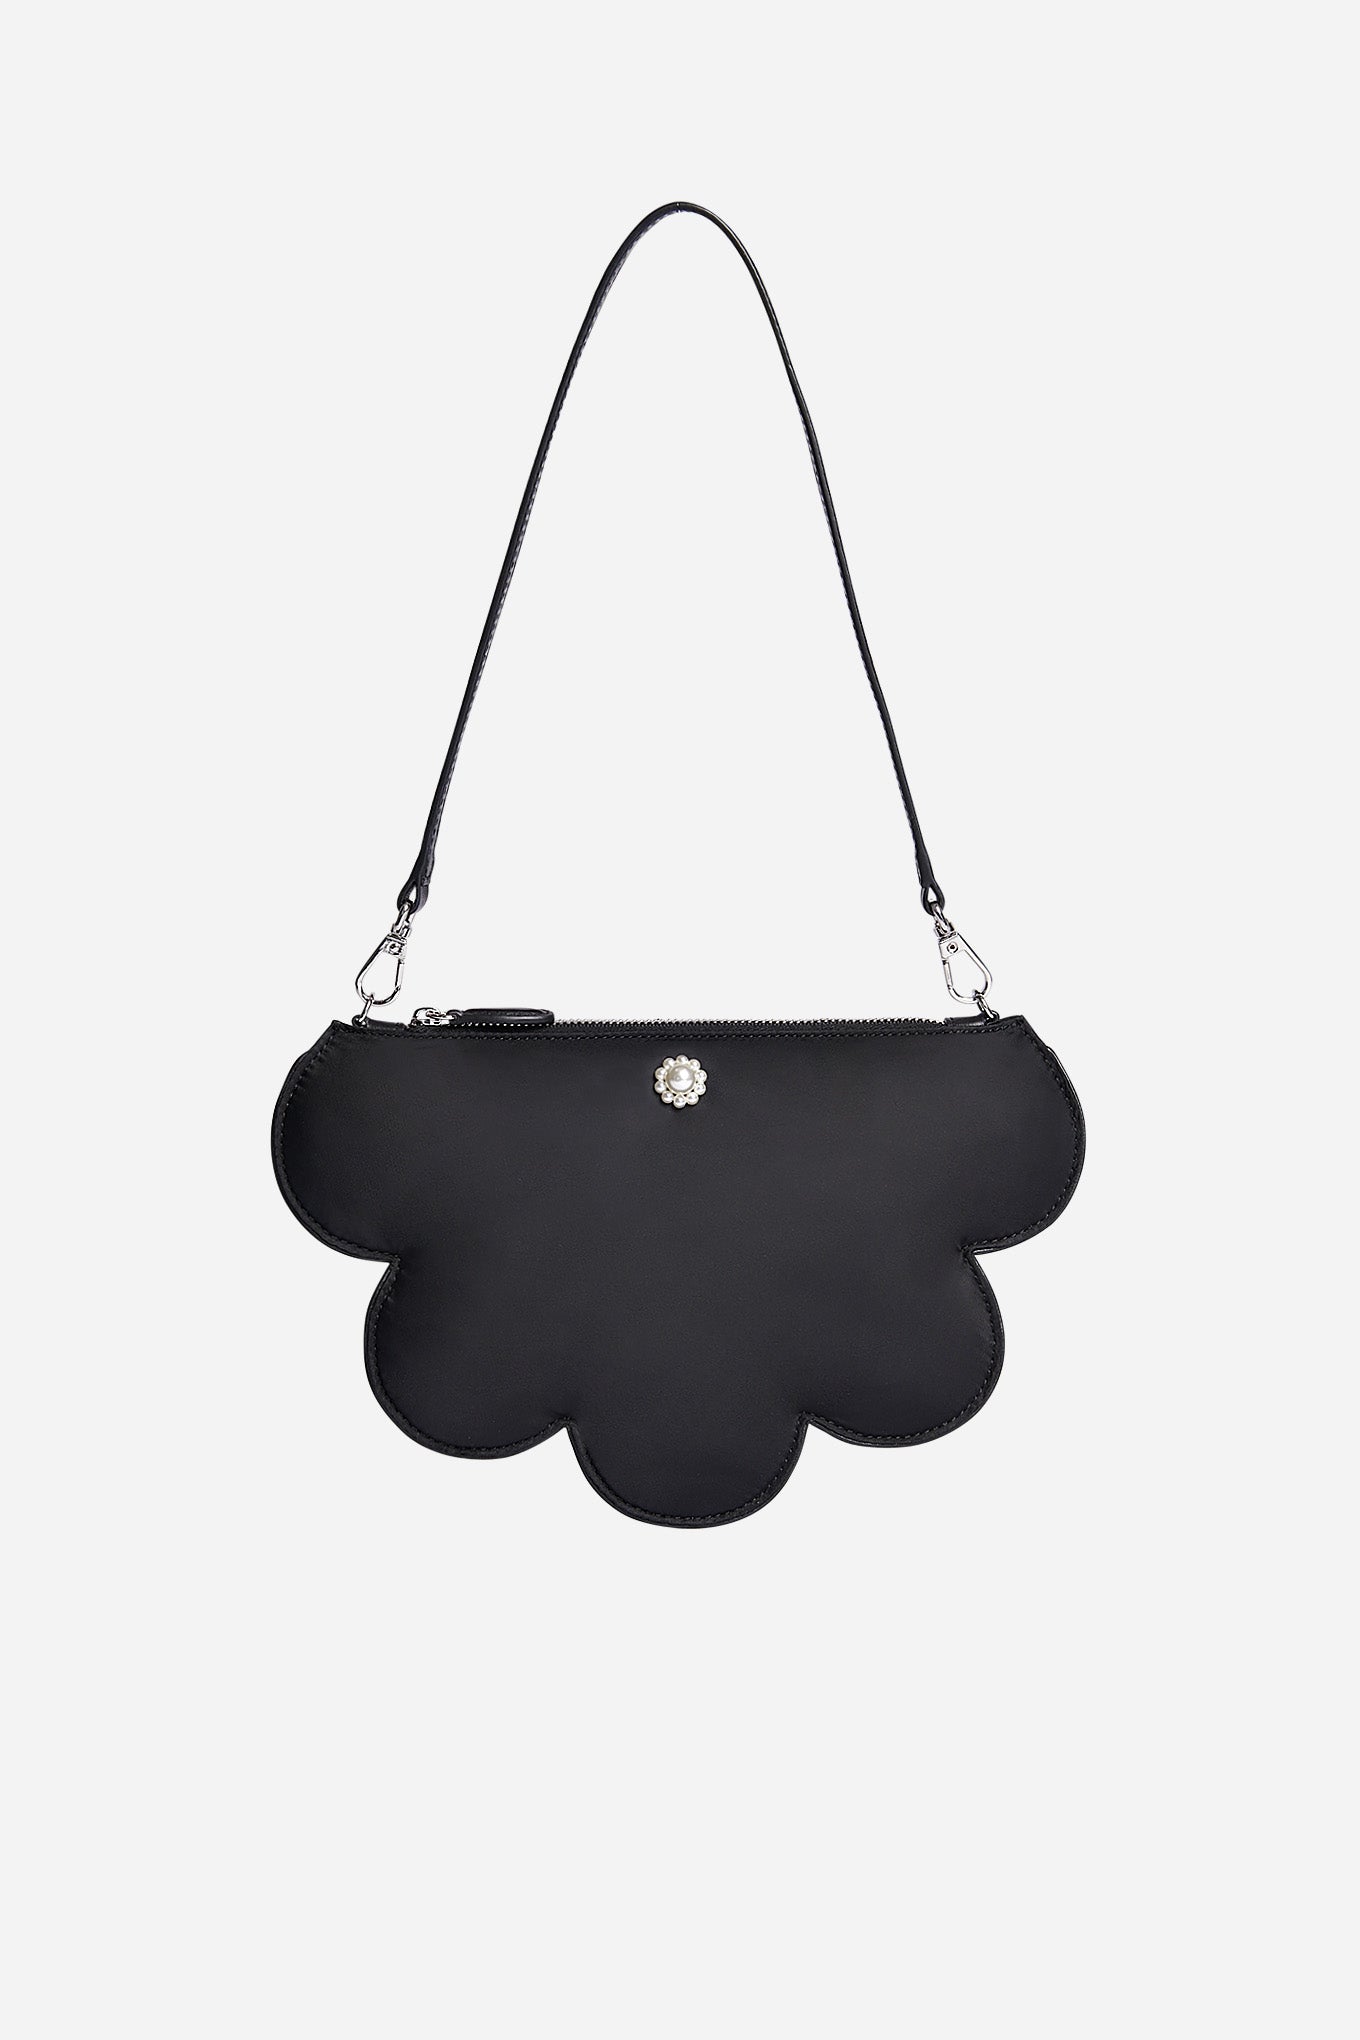 Daisy Shoulder Bag Black